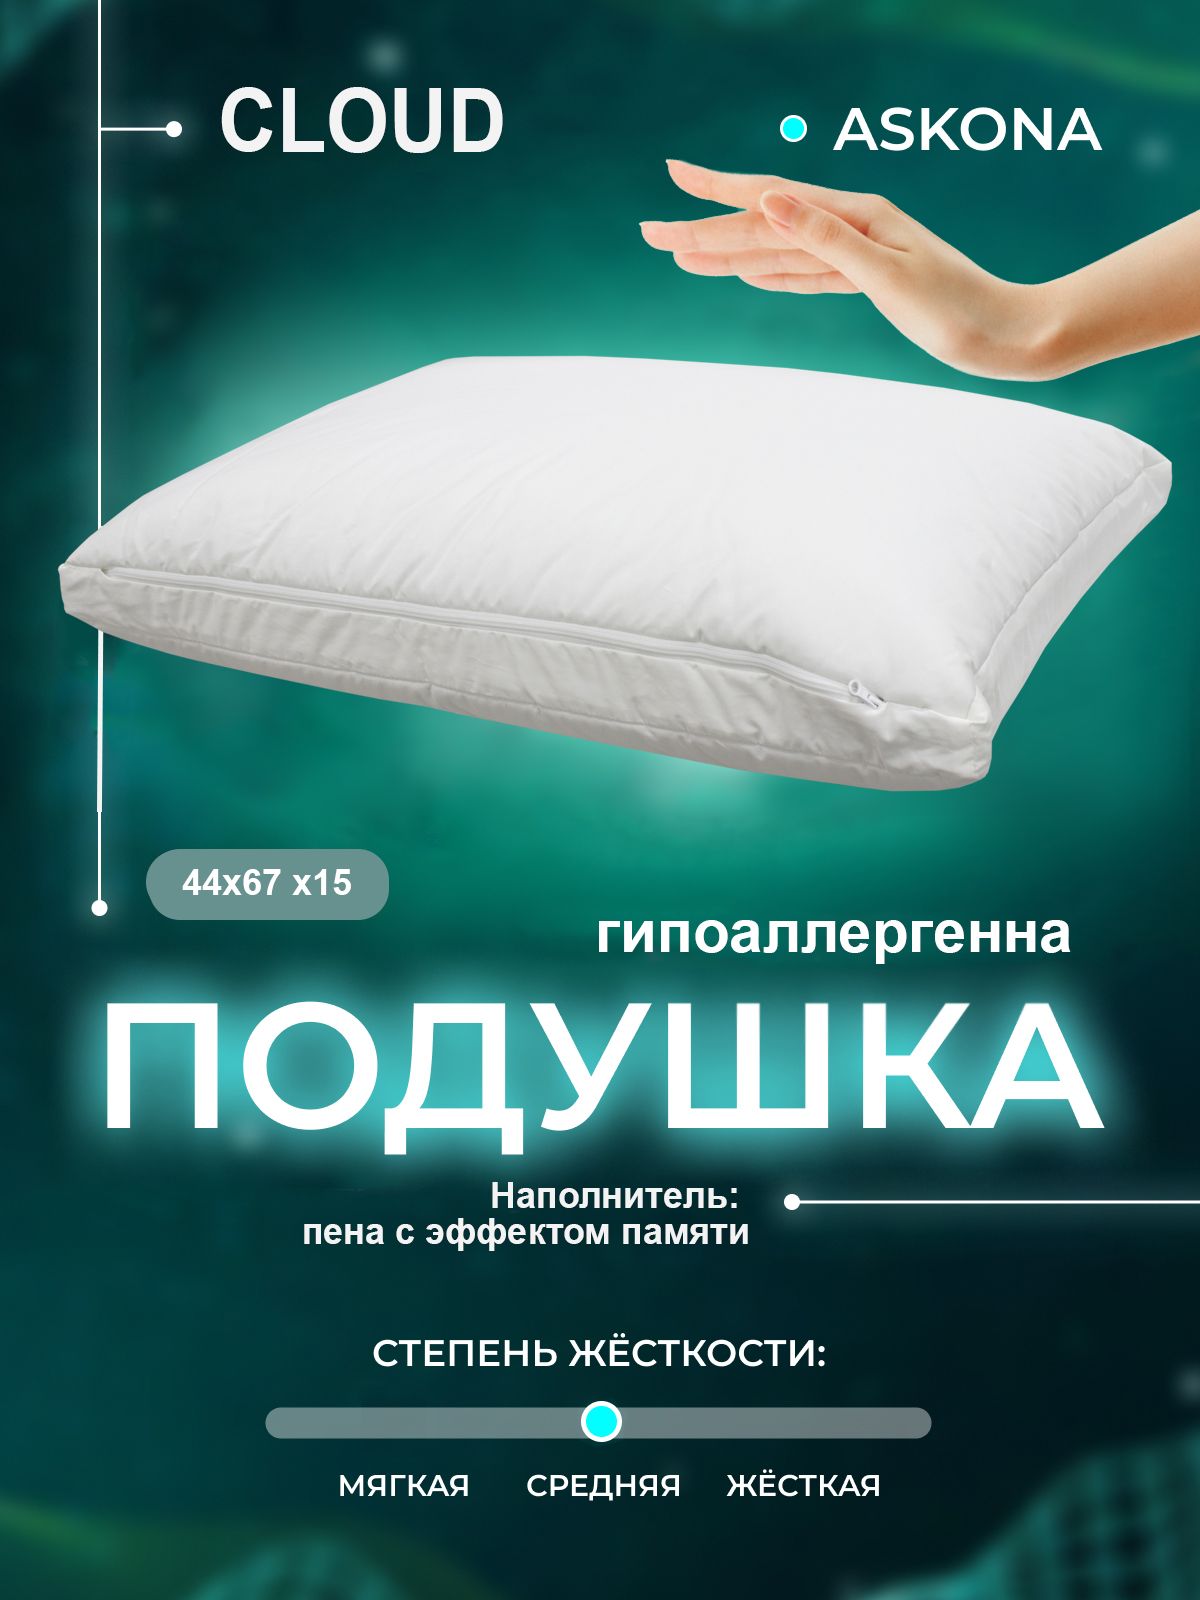 Подушка с эффектом памяти аскона. Askona подушка cloud отзывы.